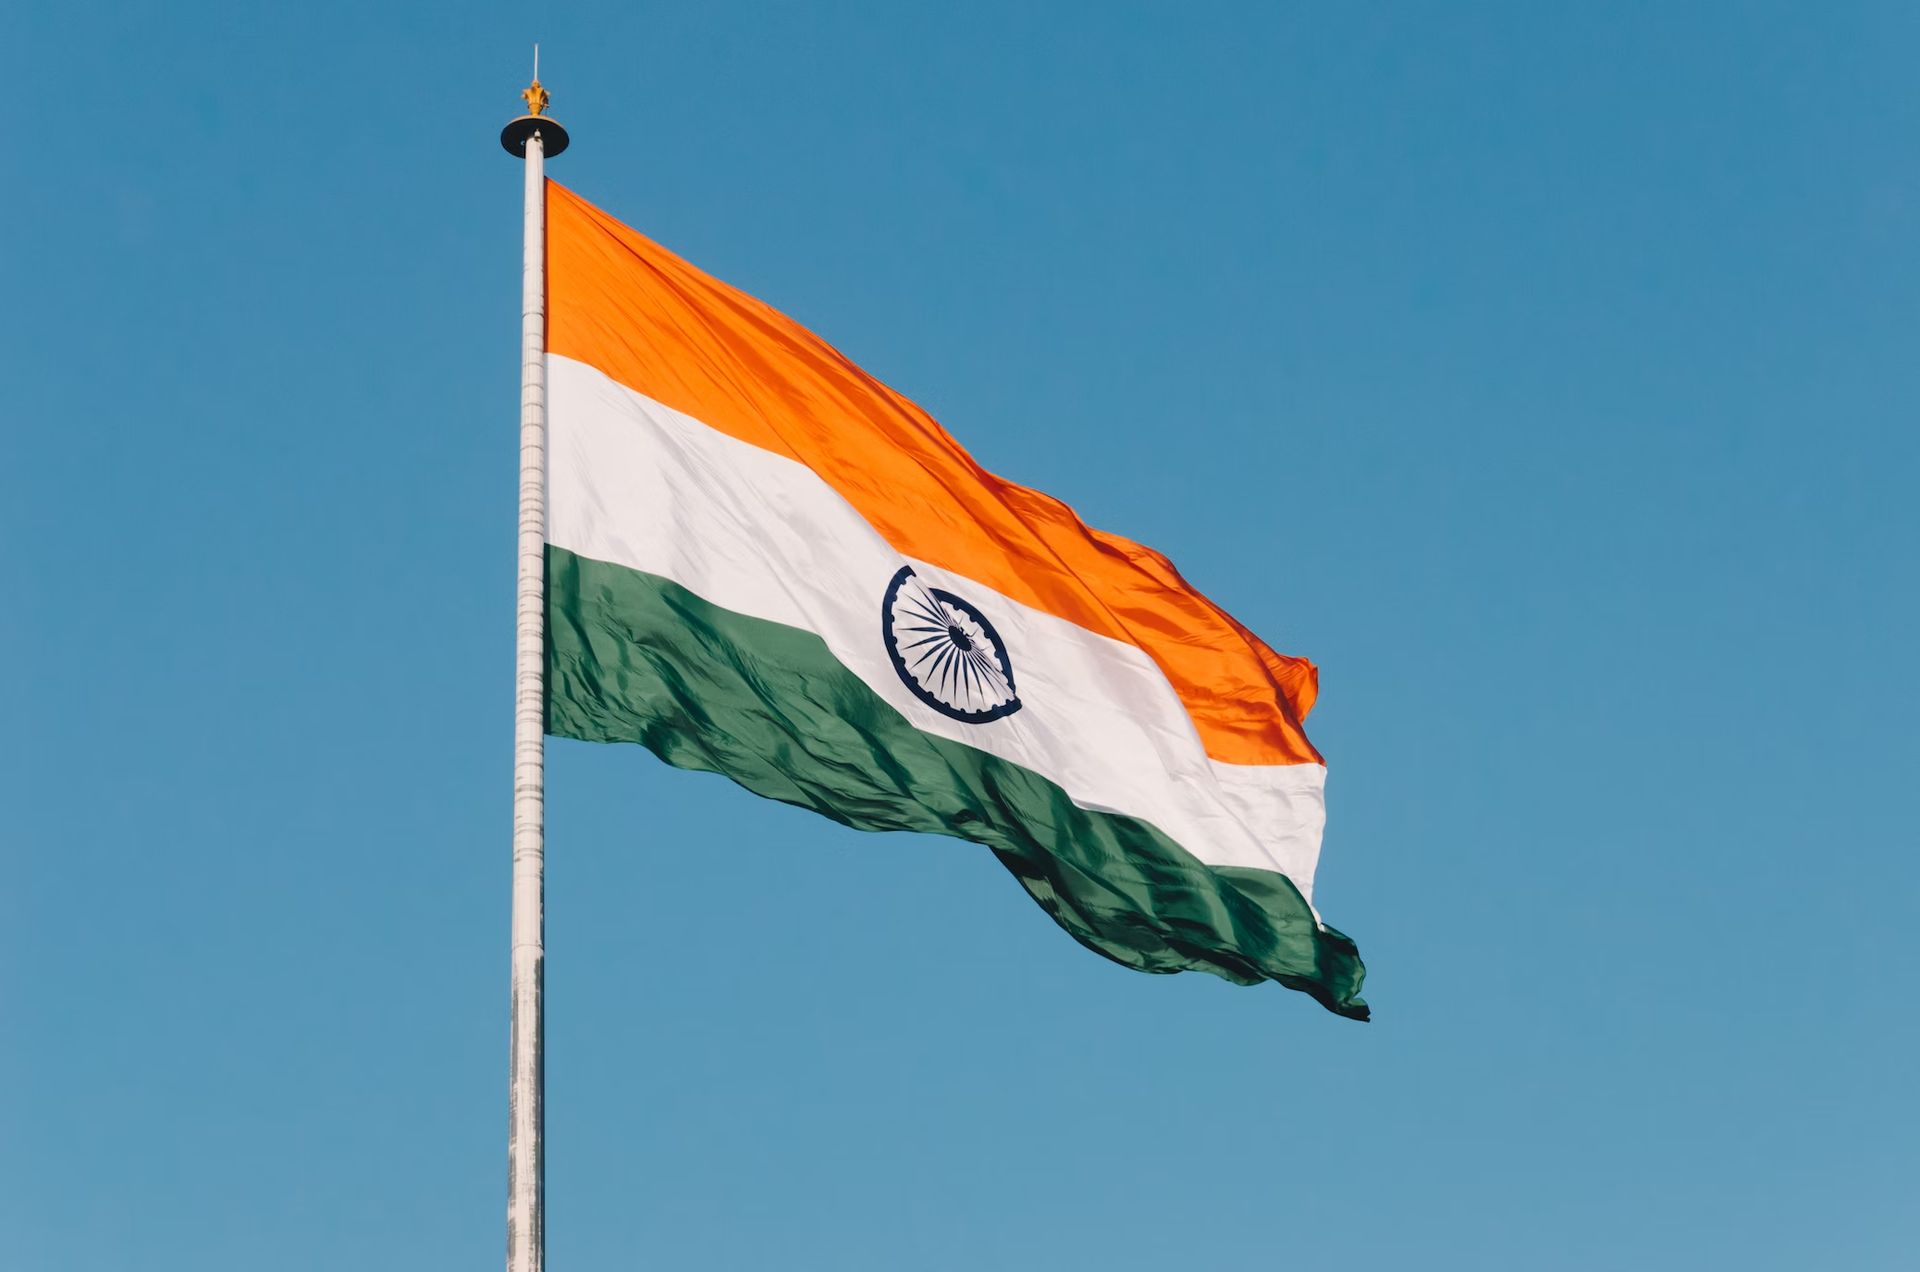 Tiền điện tử có bị cấm ở Ấn Độ không